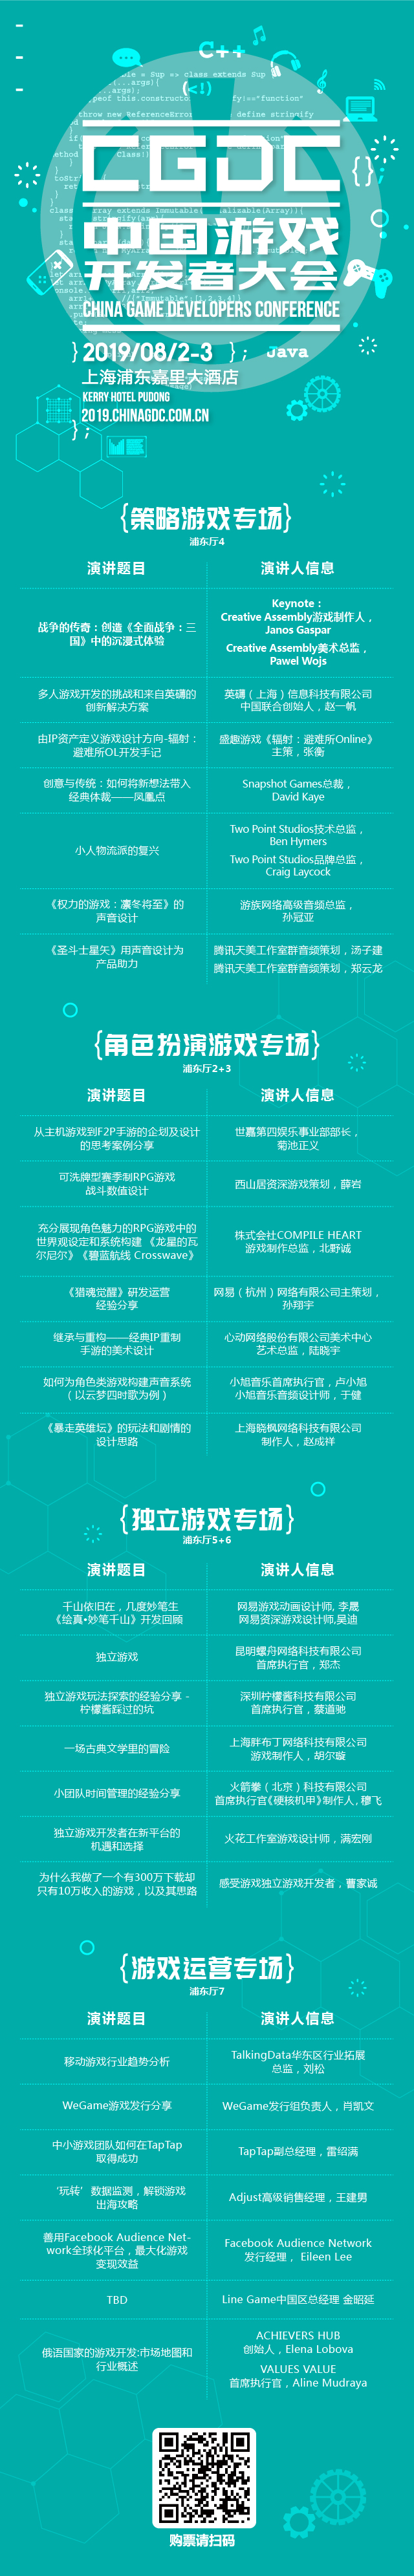 2019中国游戏开发者大会首日嘉宾预览